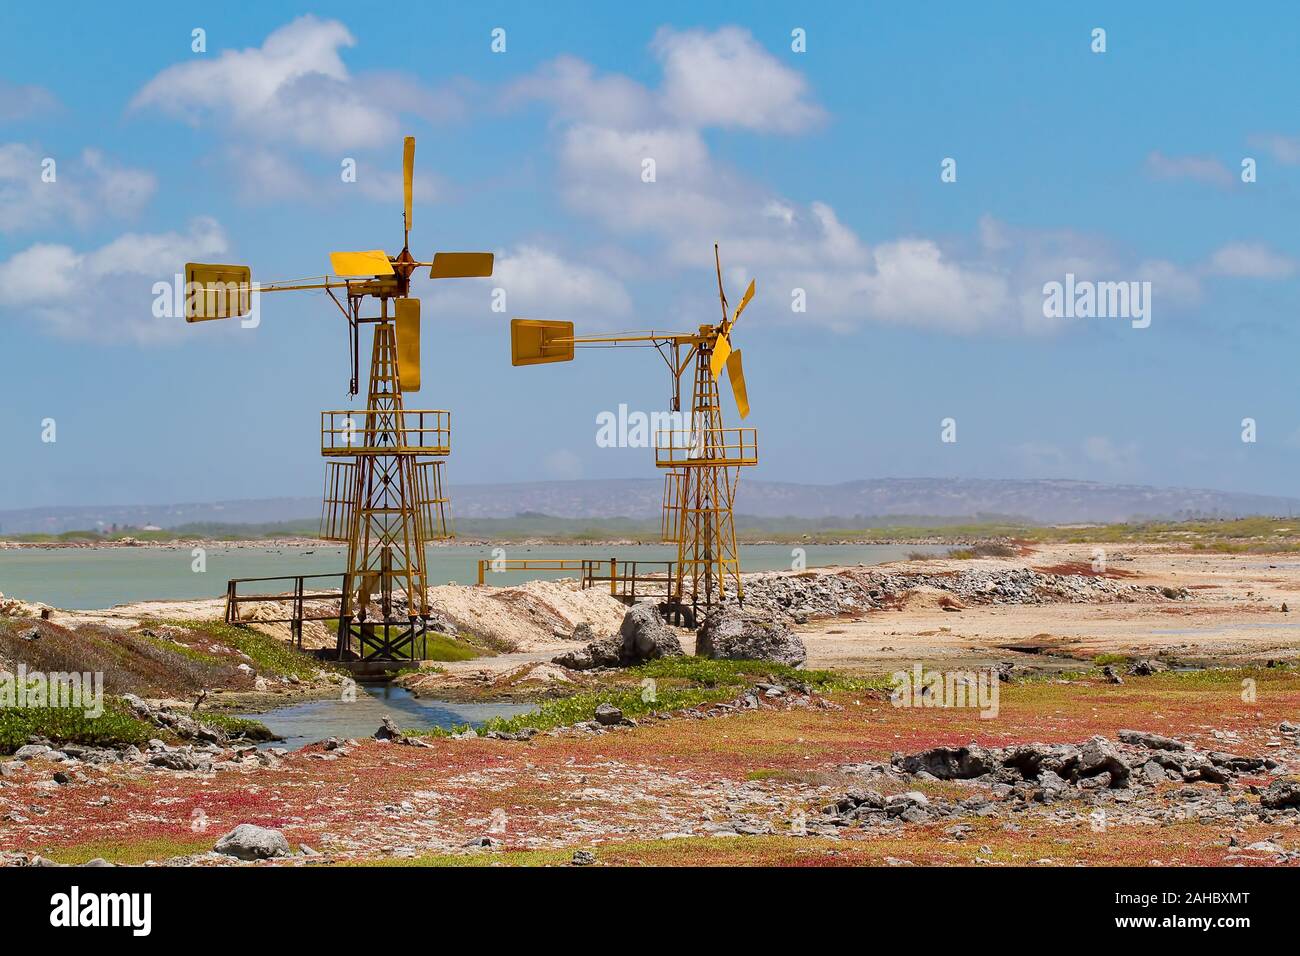 Deux moulins à vent jaune pour l'extraction de sel près de l'eau sur l'île de Bonaire Banque D'Images